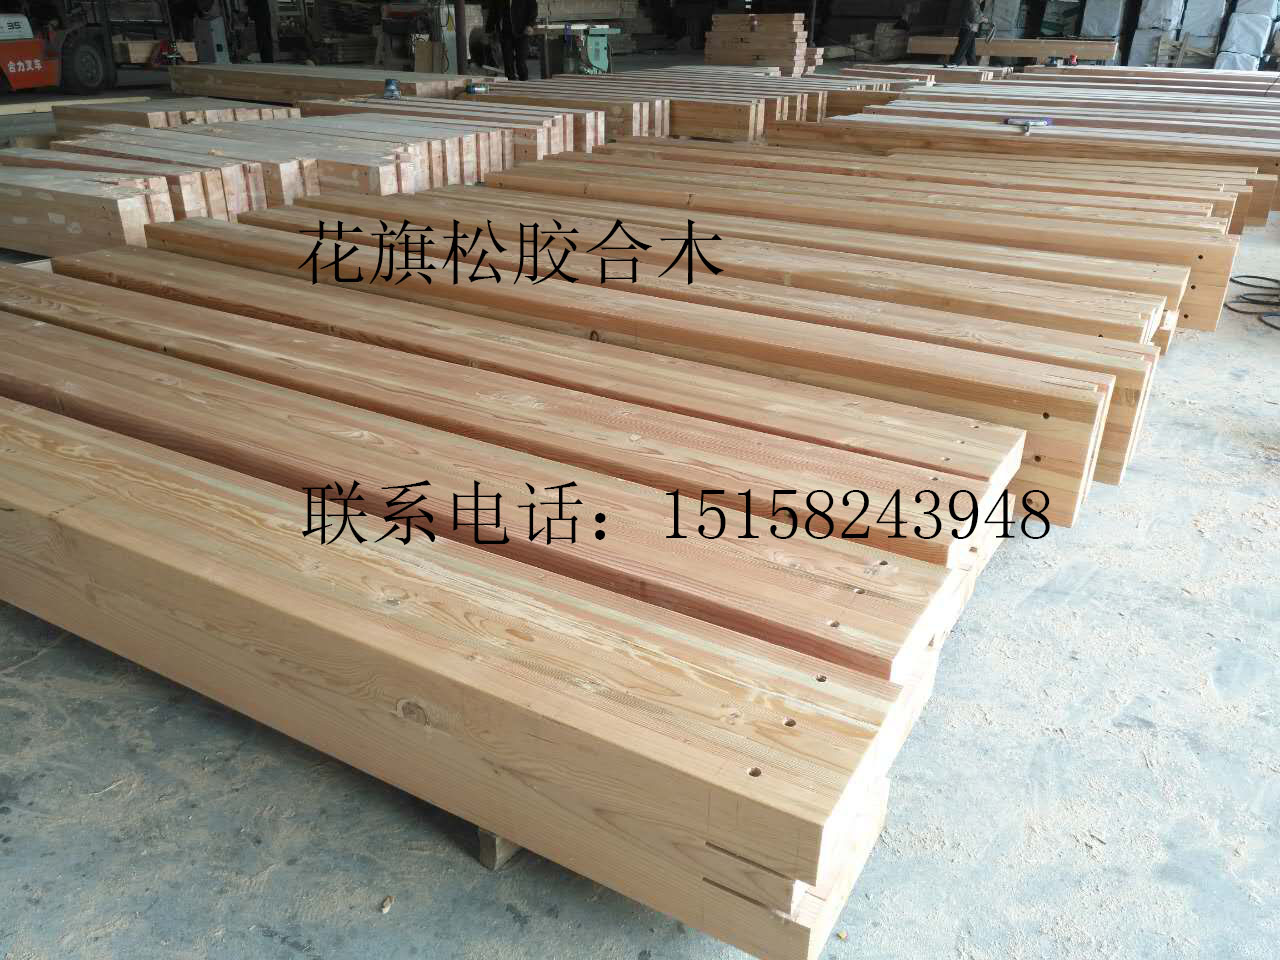 杭州市花旗松胶合木厂家花旗松胶合木的运用及特点